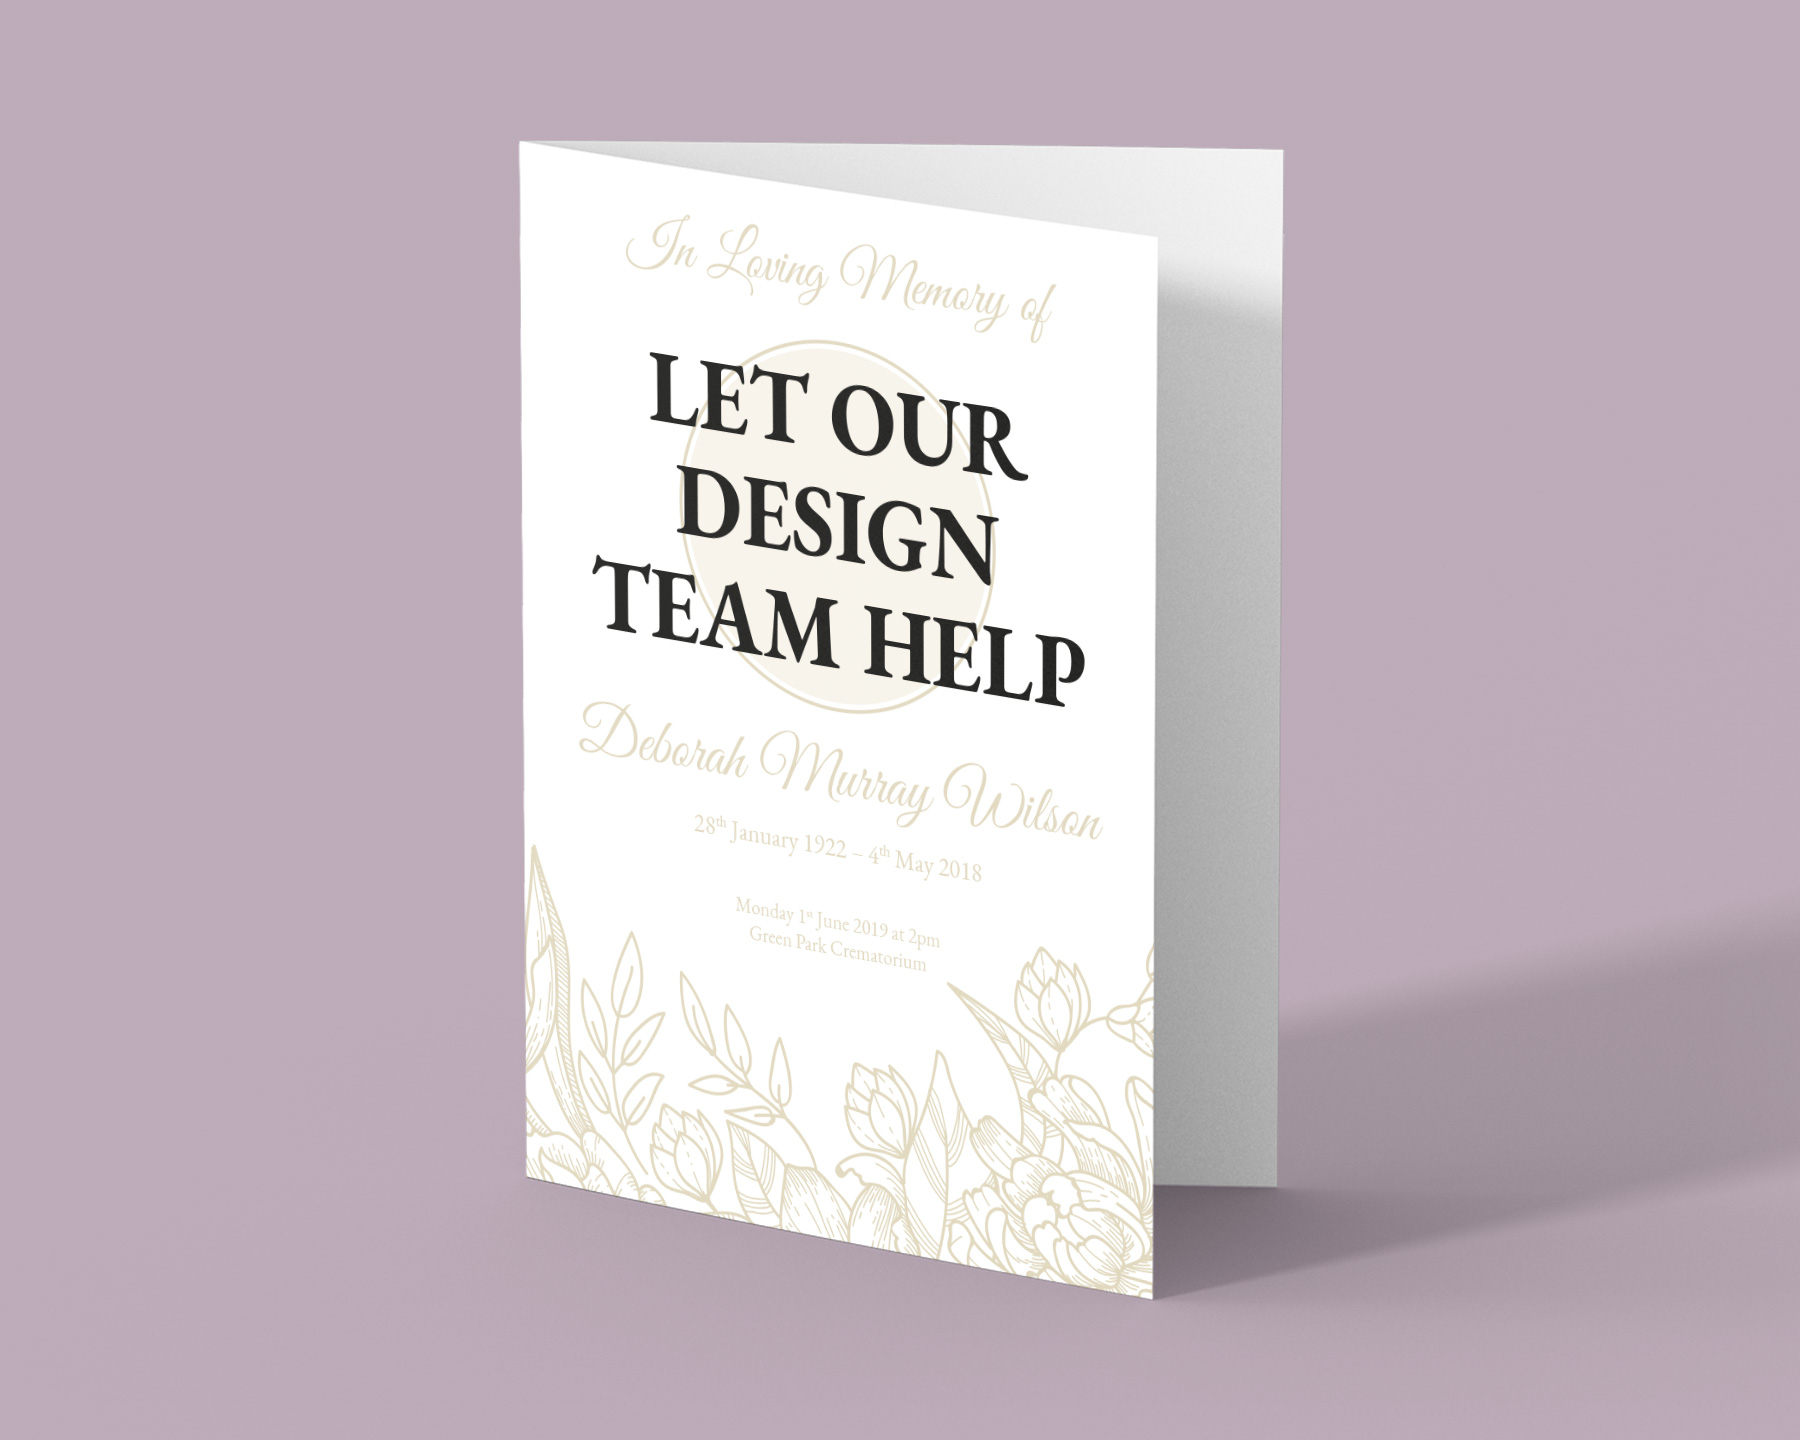 Let us design for you